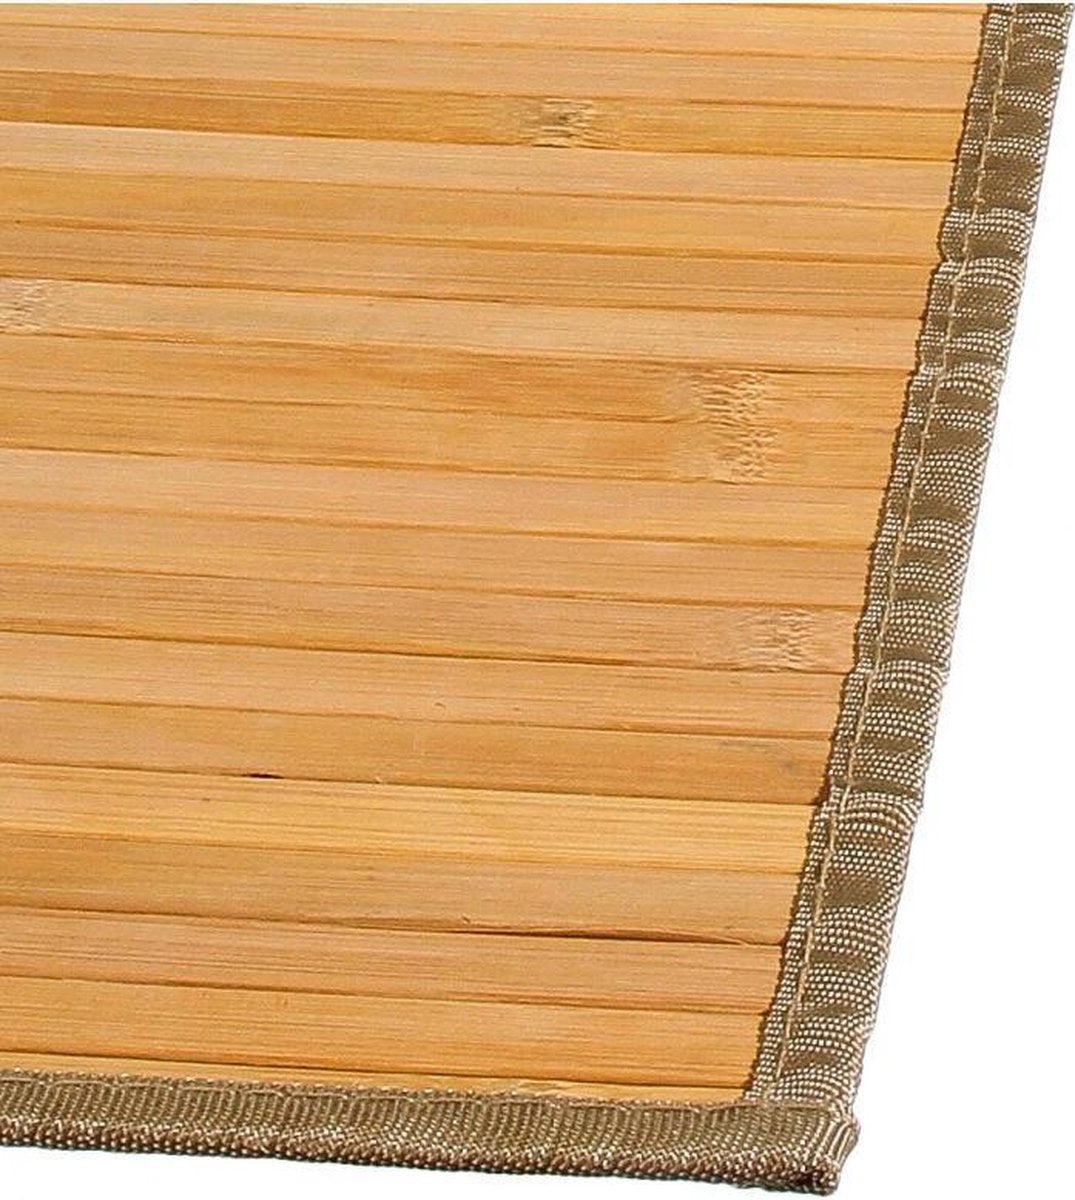 Bamboe mat naturel 50 x 80 cm